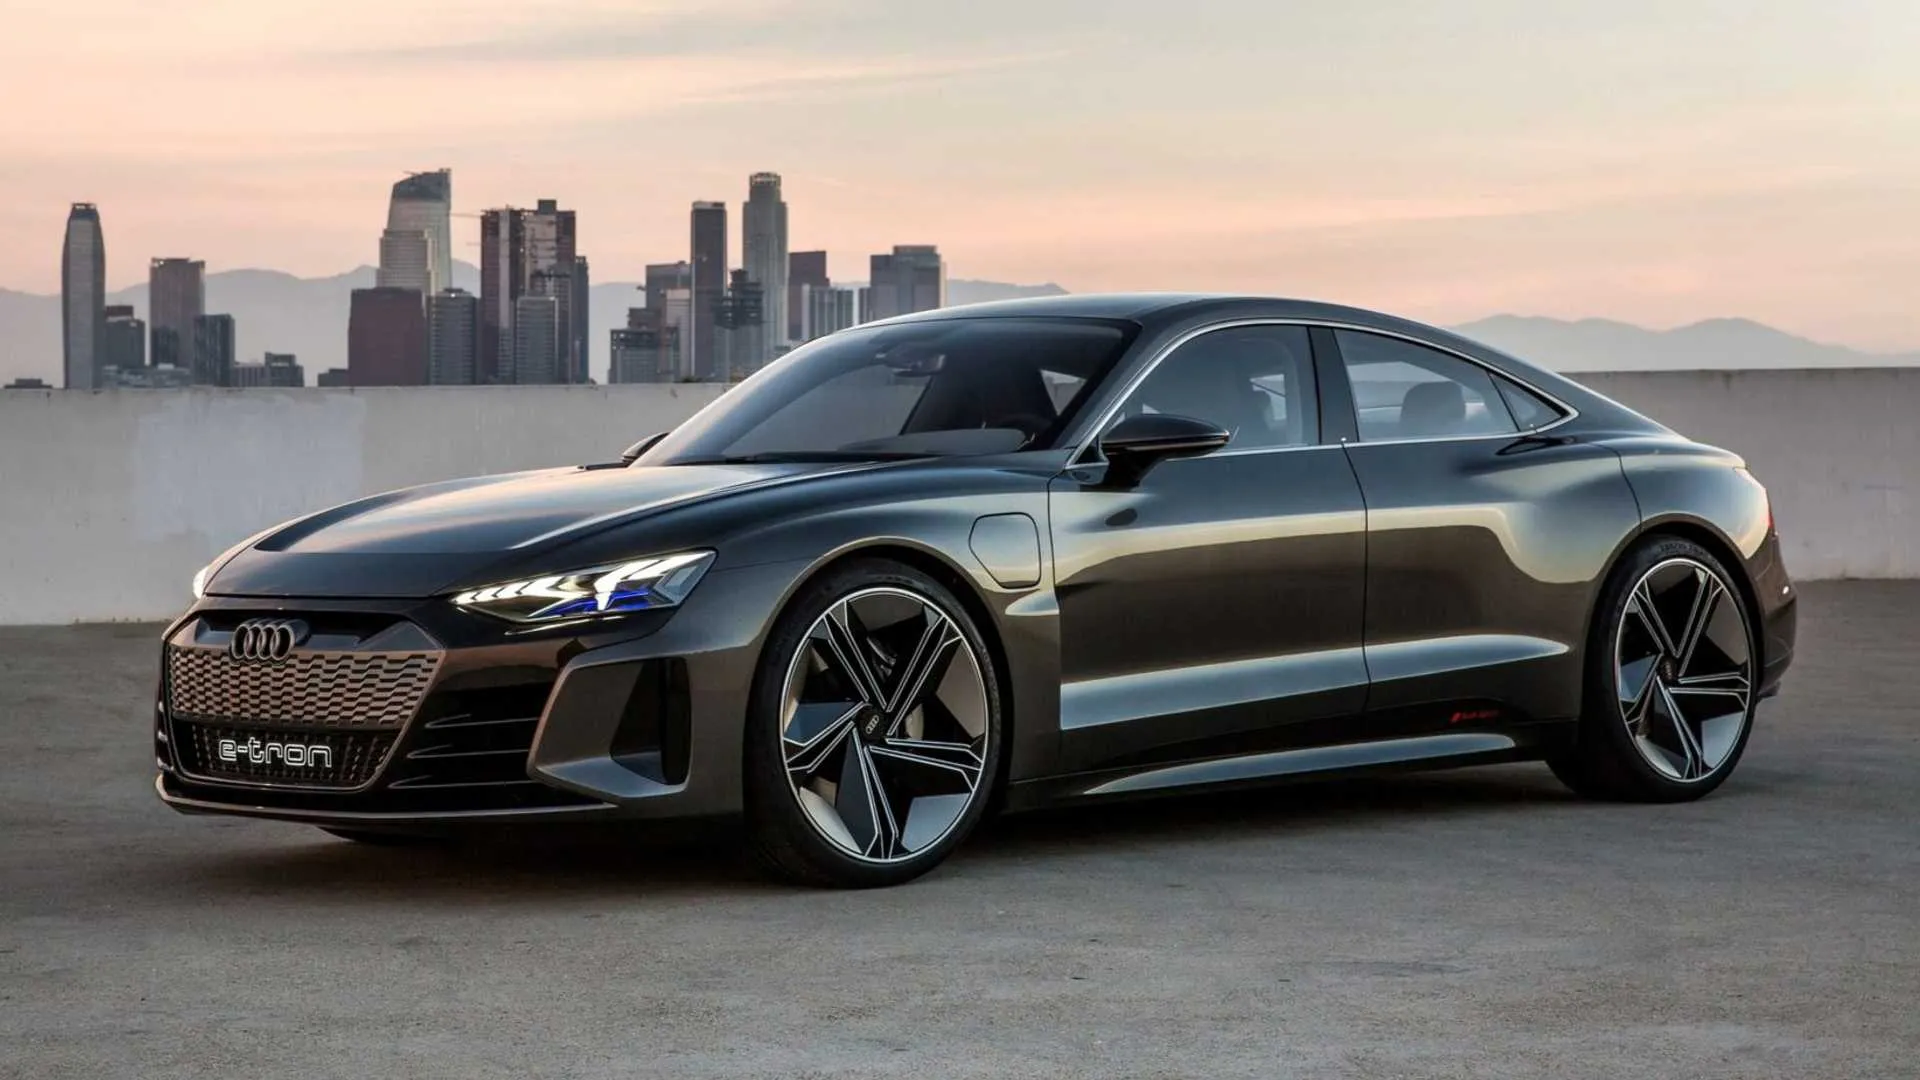 Audi yakhazikitsa e-Tron GT yake, galimoto yokongola yamagetsi yopangidwa kuti ipikisane ndi Tesla, ndi mtengo woyambira wa $ 100,000.